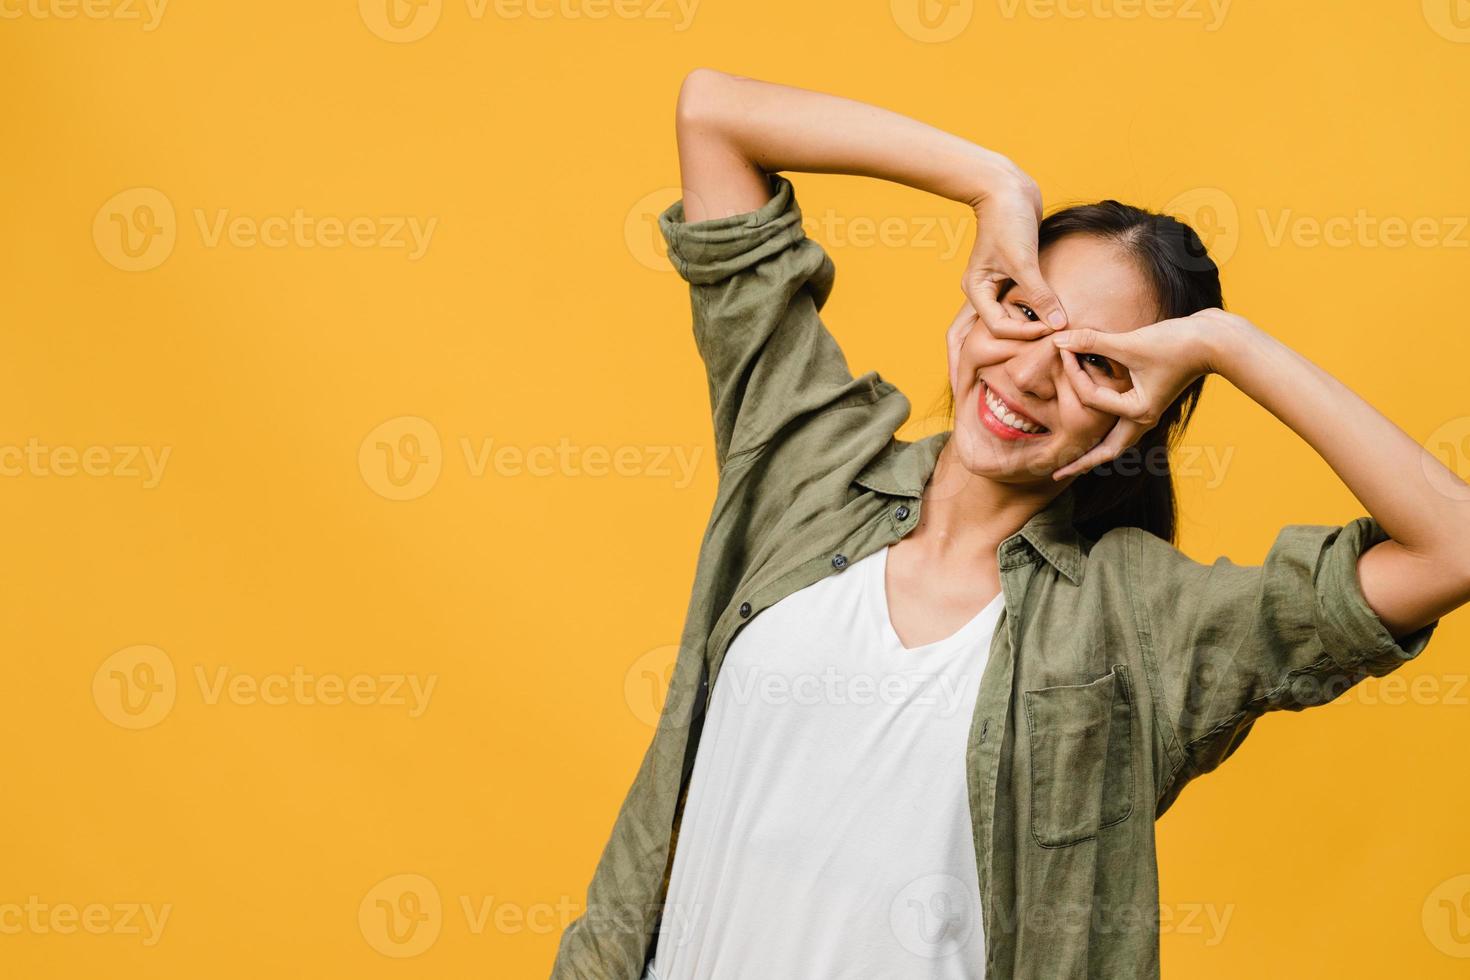 giovane donna asiatica con espressione positiva, sorriso ampiamente, vestita con abiti casual e guardando la telecamera su sfondo giallo. felice adorabile donna felice esulta successo. concetto di espressione facciale. foto